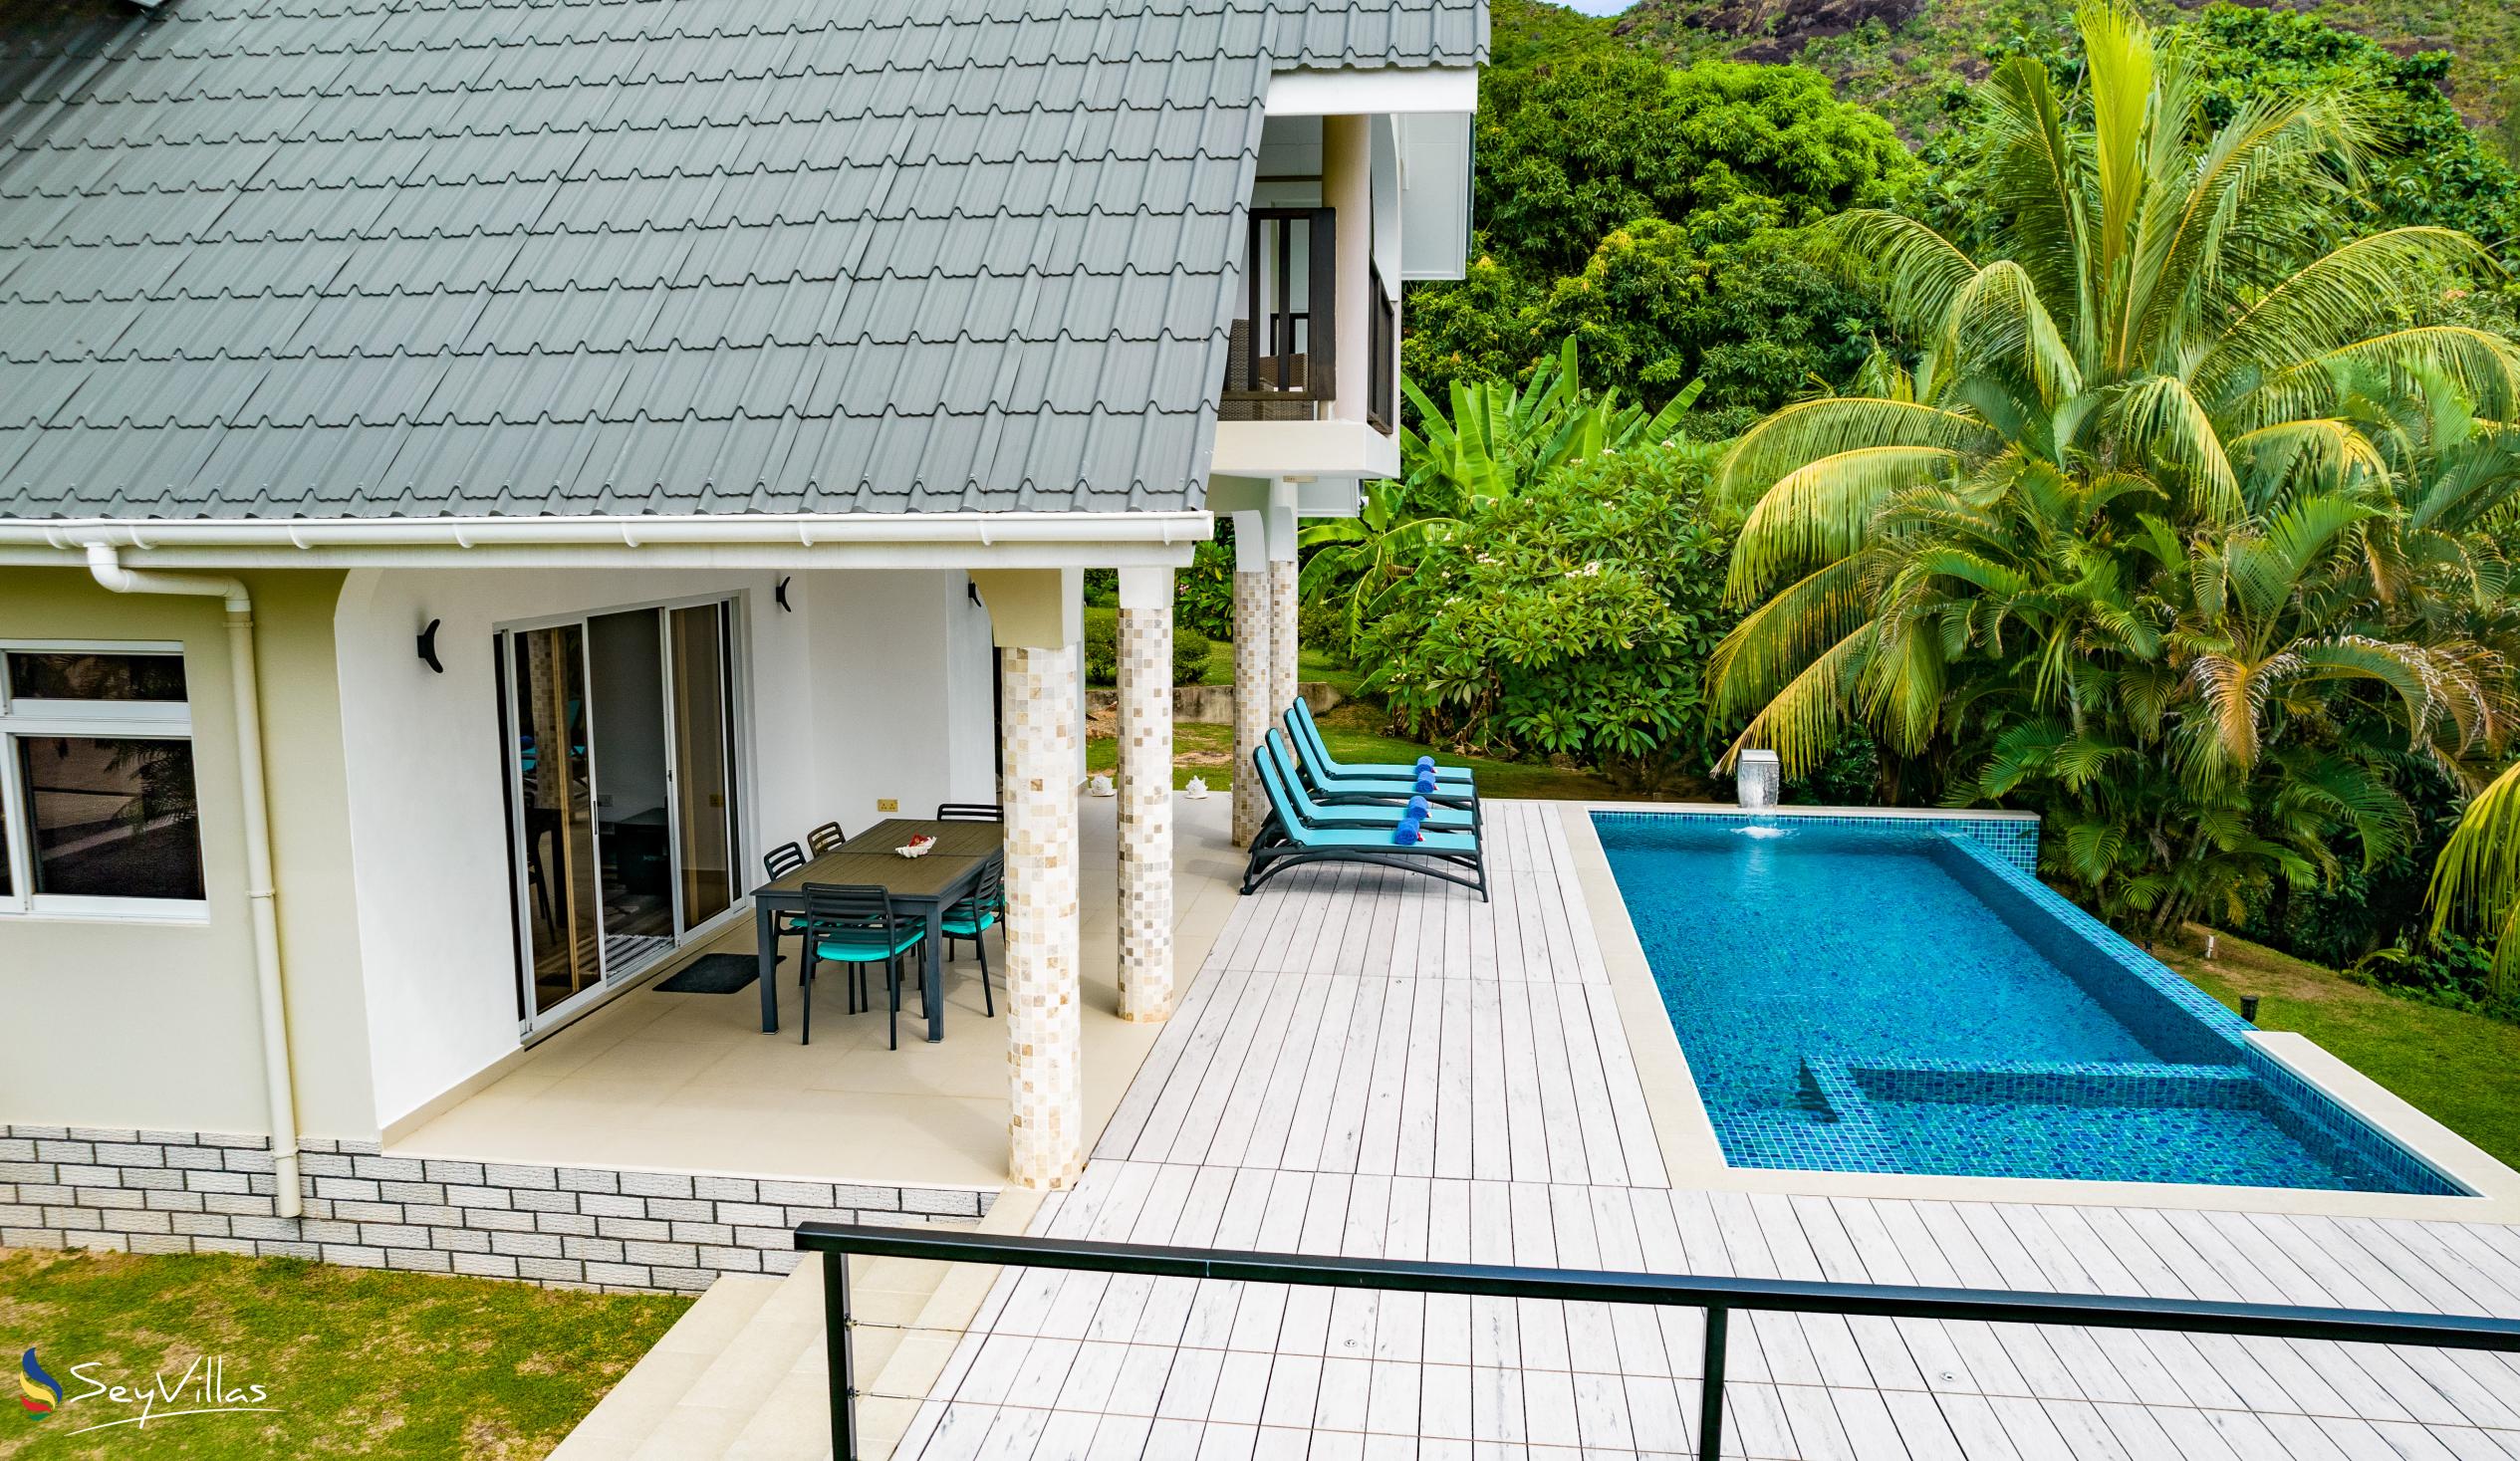 Foto 30: Tranquility Villa - Aussenbereich - Praslin (Seychellen)